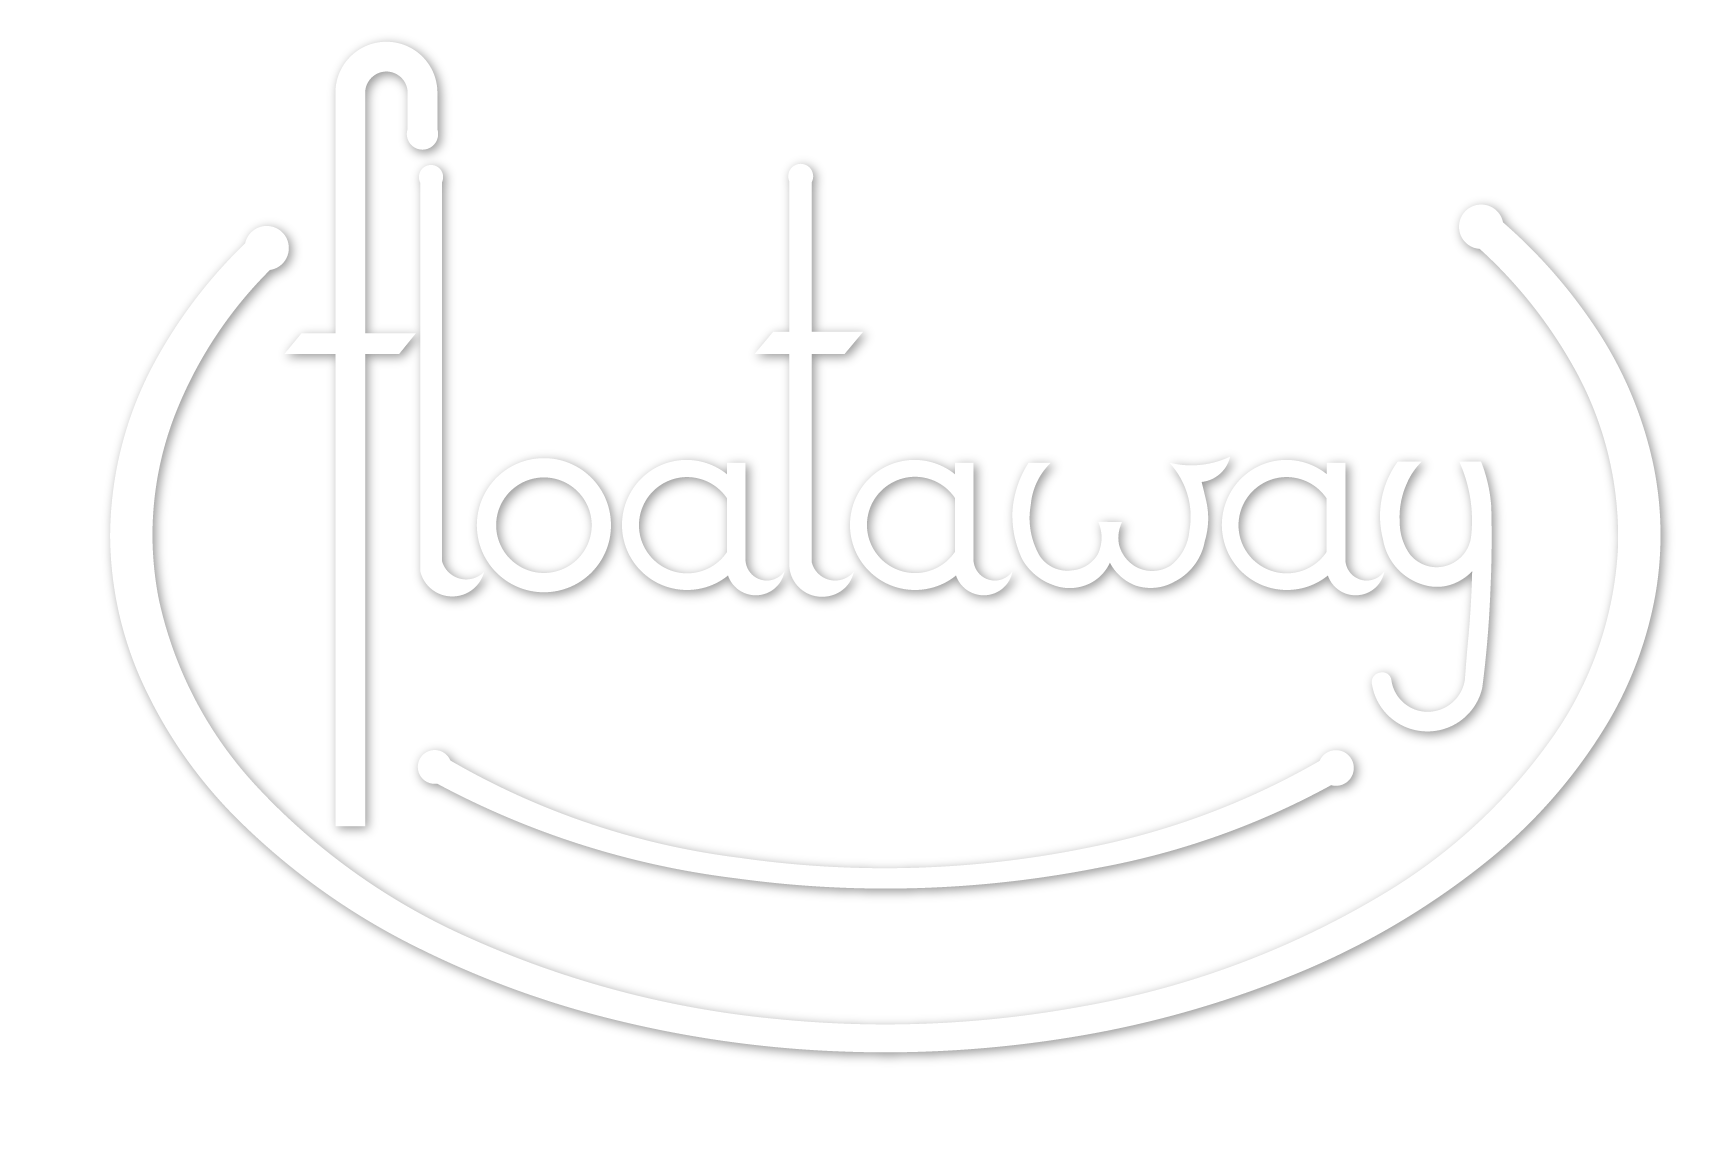 Floataway